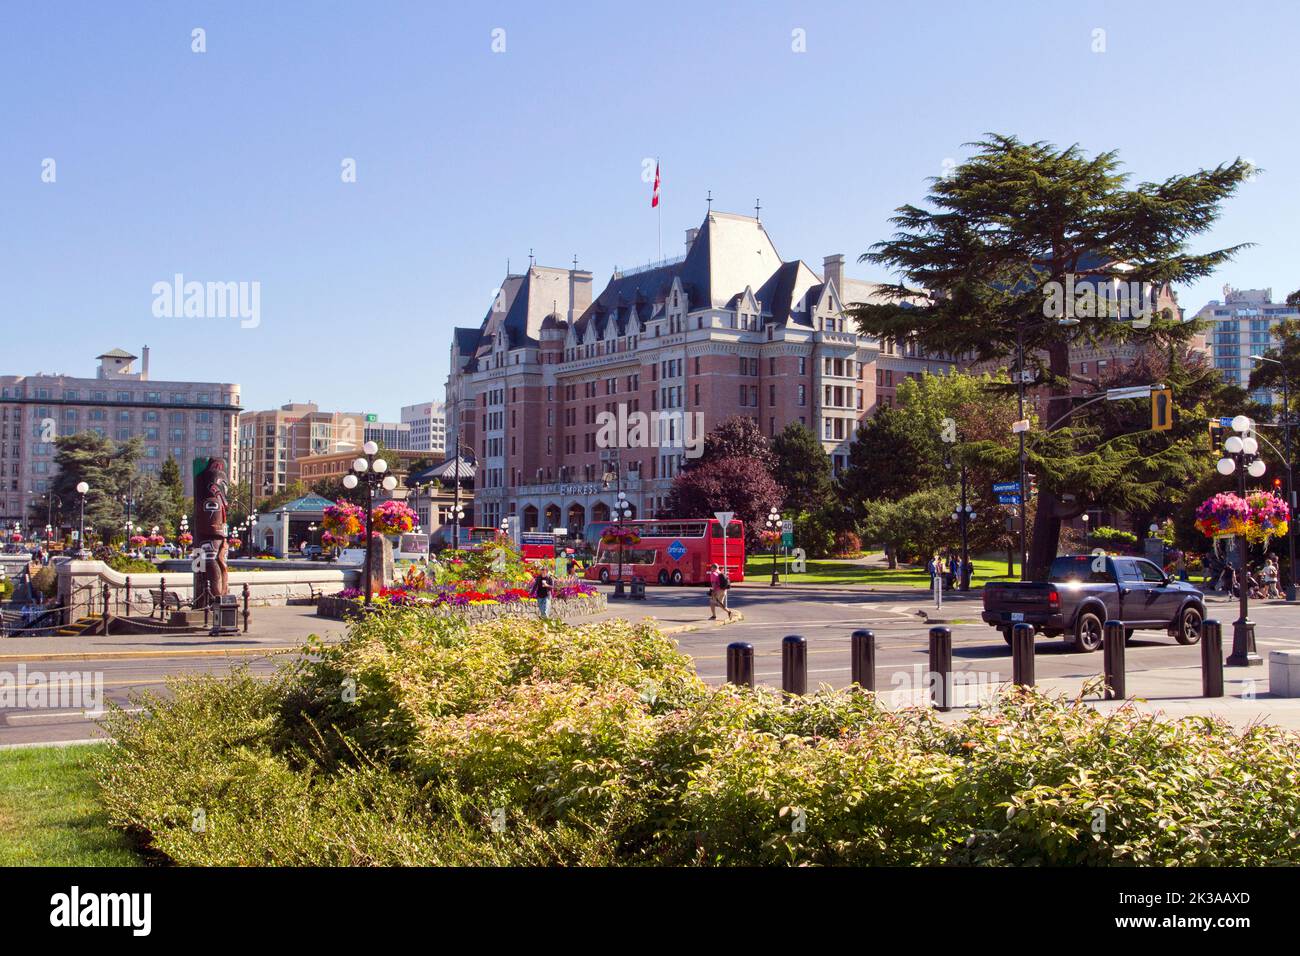 Vue panoramique de l'hôtel Fairmont Empress le long de la rue Government, Victoria (Colombie-Britannique), un lieu historique national du Canada Banque D'Images